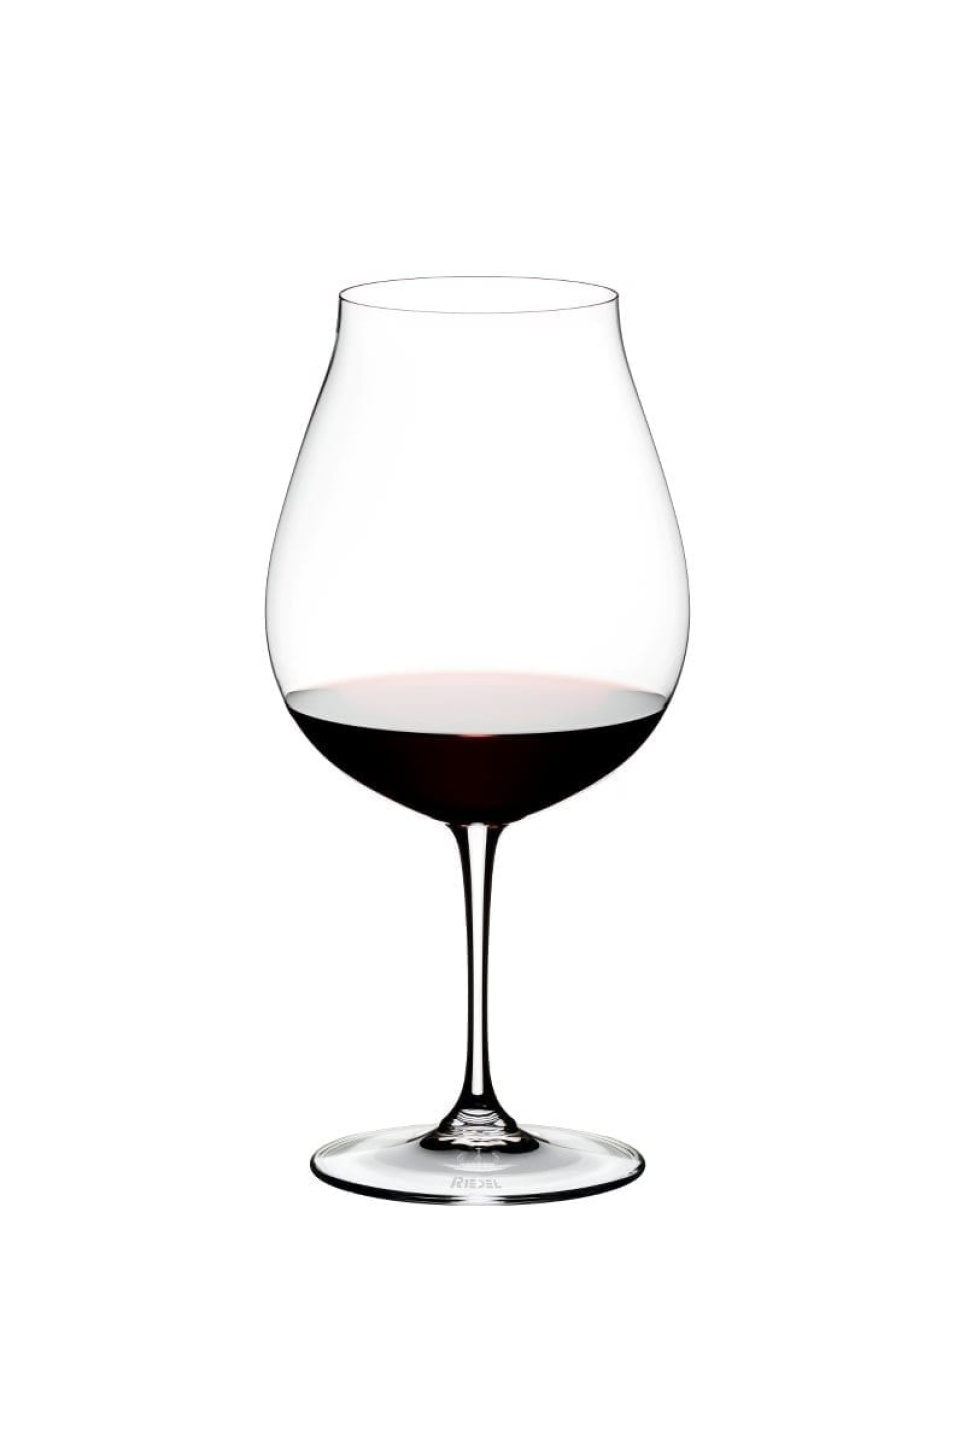 Kieliszki do czerwonego wina New World Pinot Noir 800 ml, Vinum - Riedel w grupie Bar i wino / Kieliszki do wina / Kieliszki do czerwonego wina w The Kitchen Lab (1073-20050)